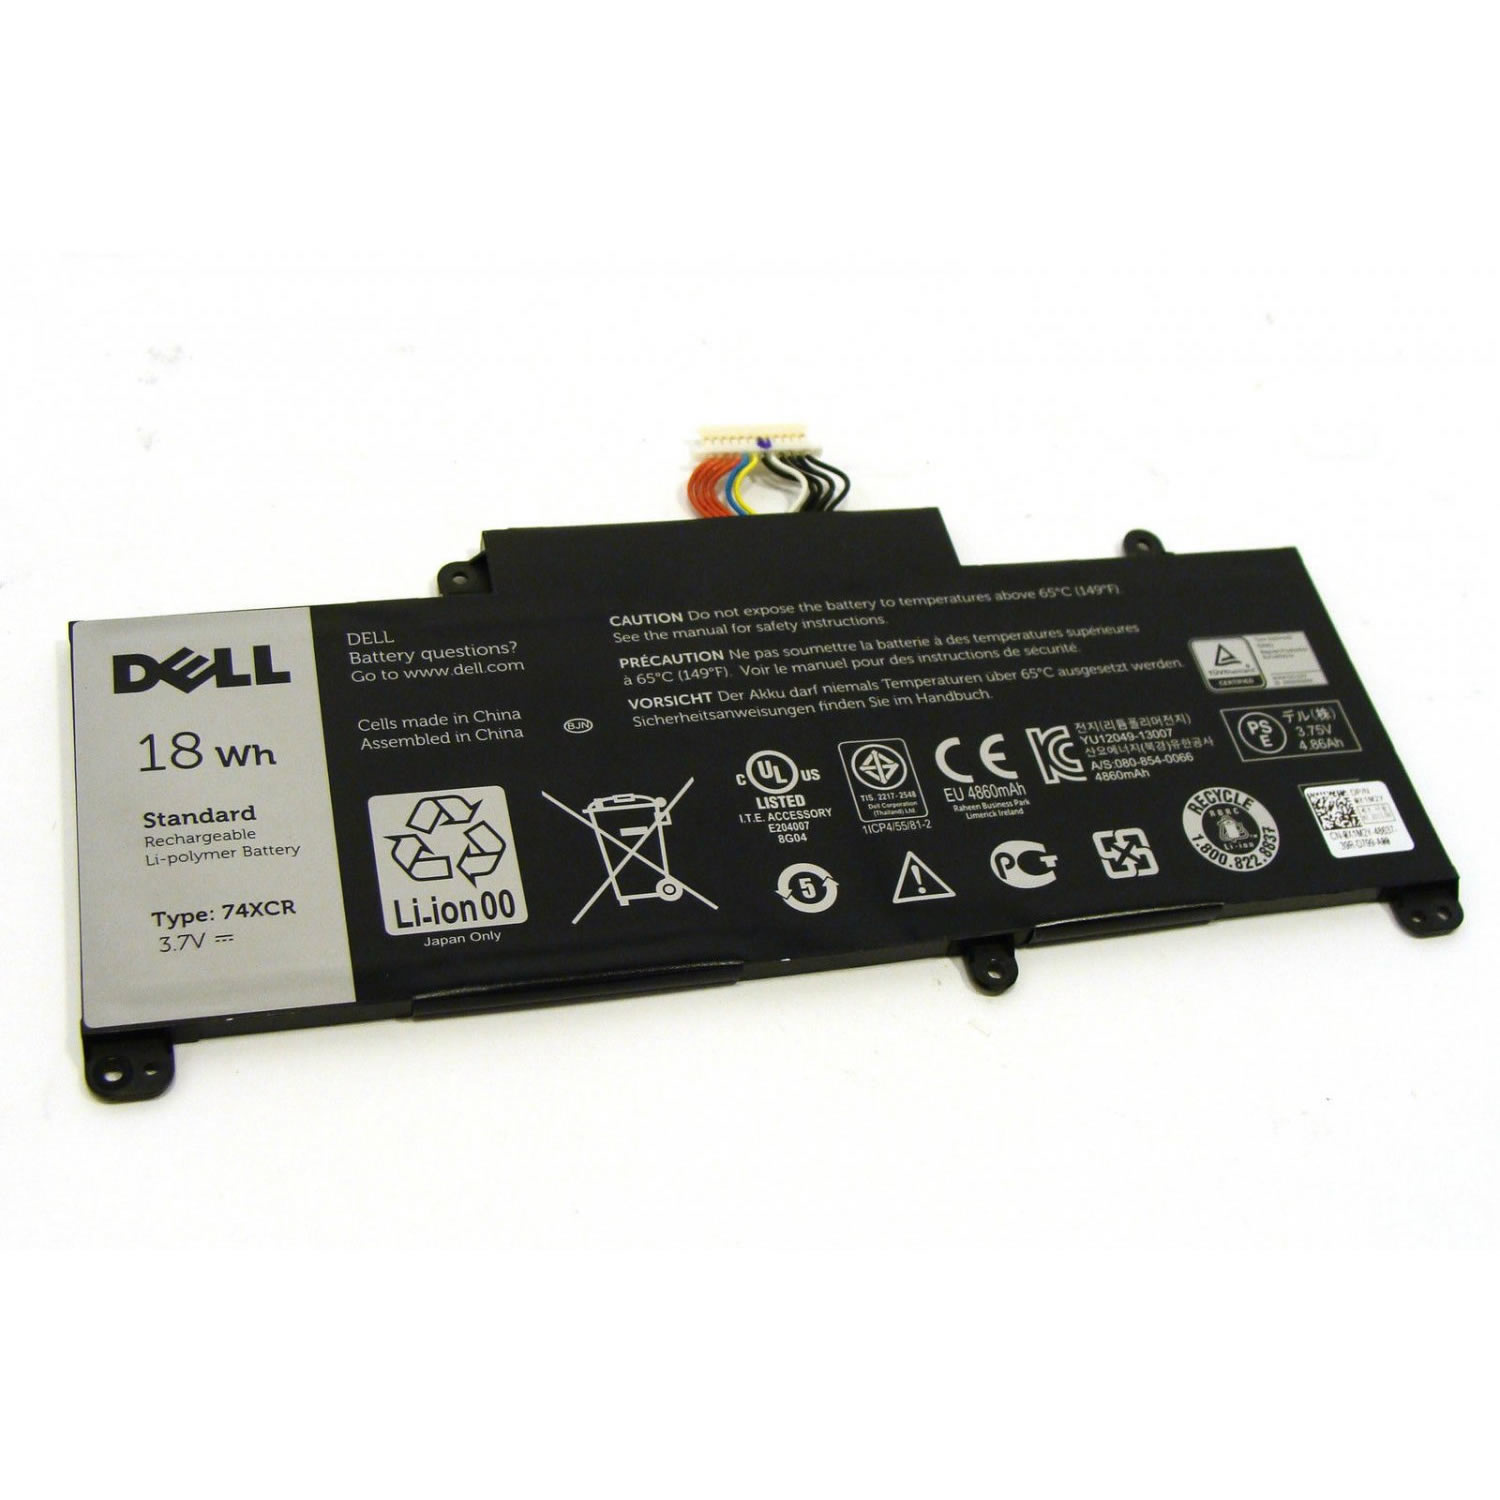 Batterie originale Dell 74XCR 074XCR VXGP6 3.7V 4864mAh, 18Wh pour ordinateur portable Dell Venue 8 Pro 5830 Tablet, Venue 8 Pro 5830 séries